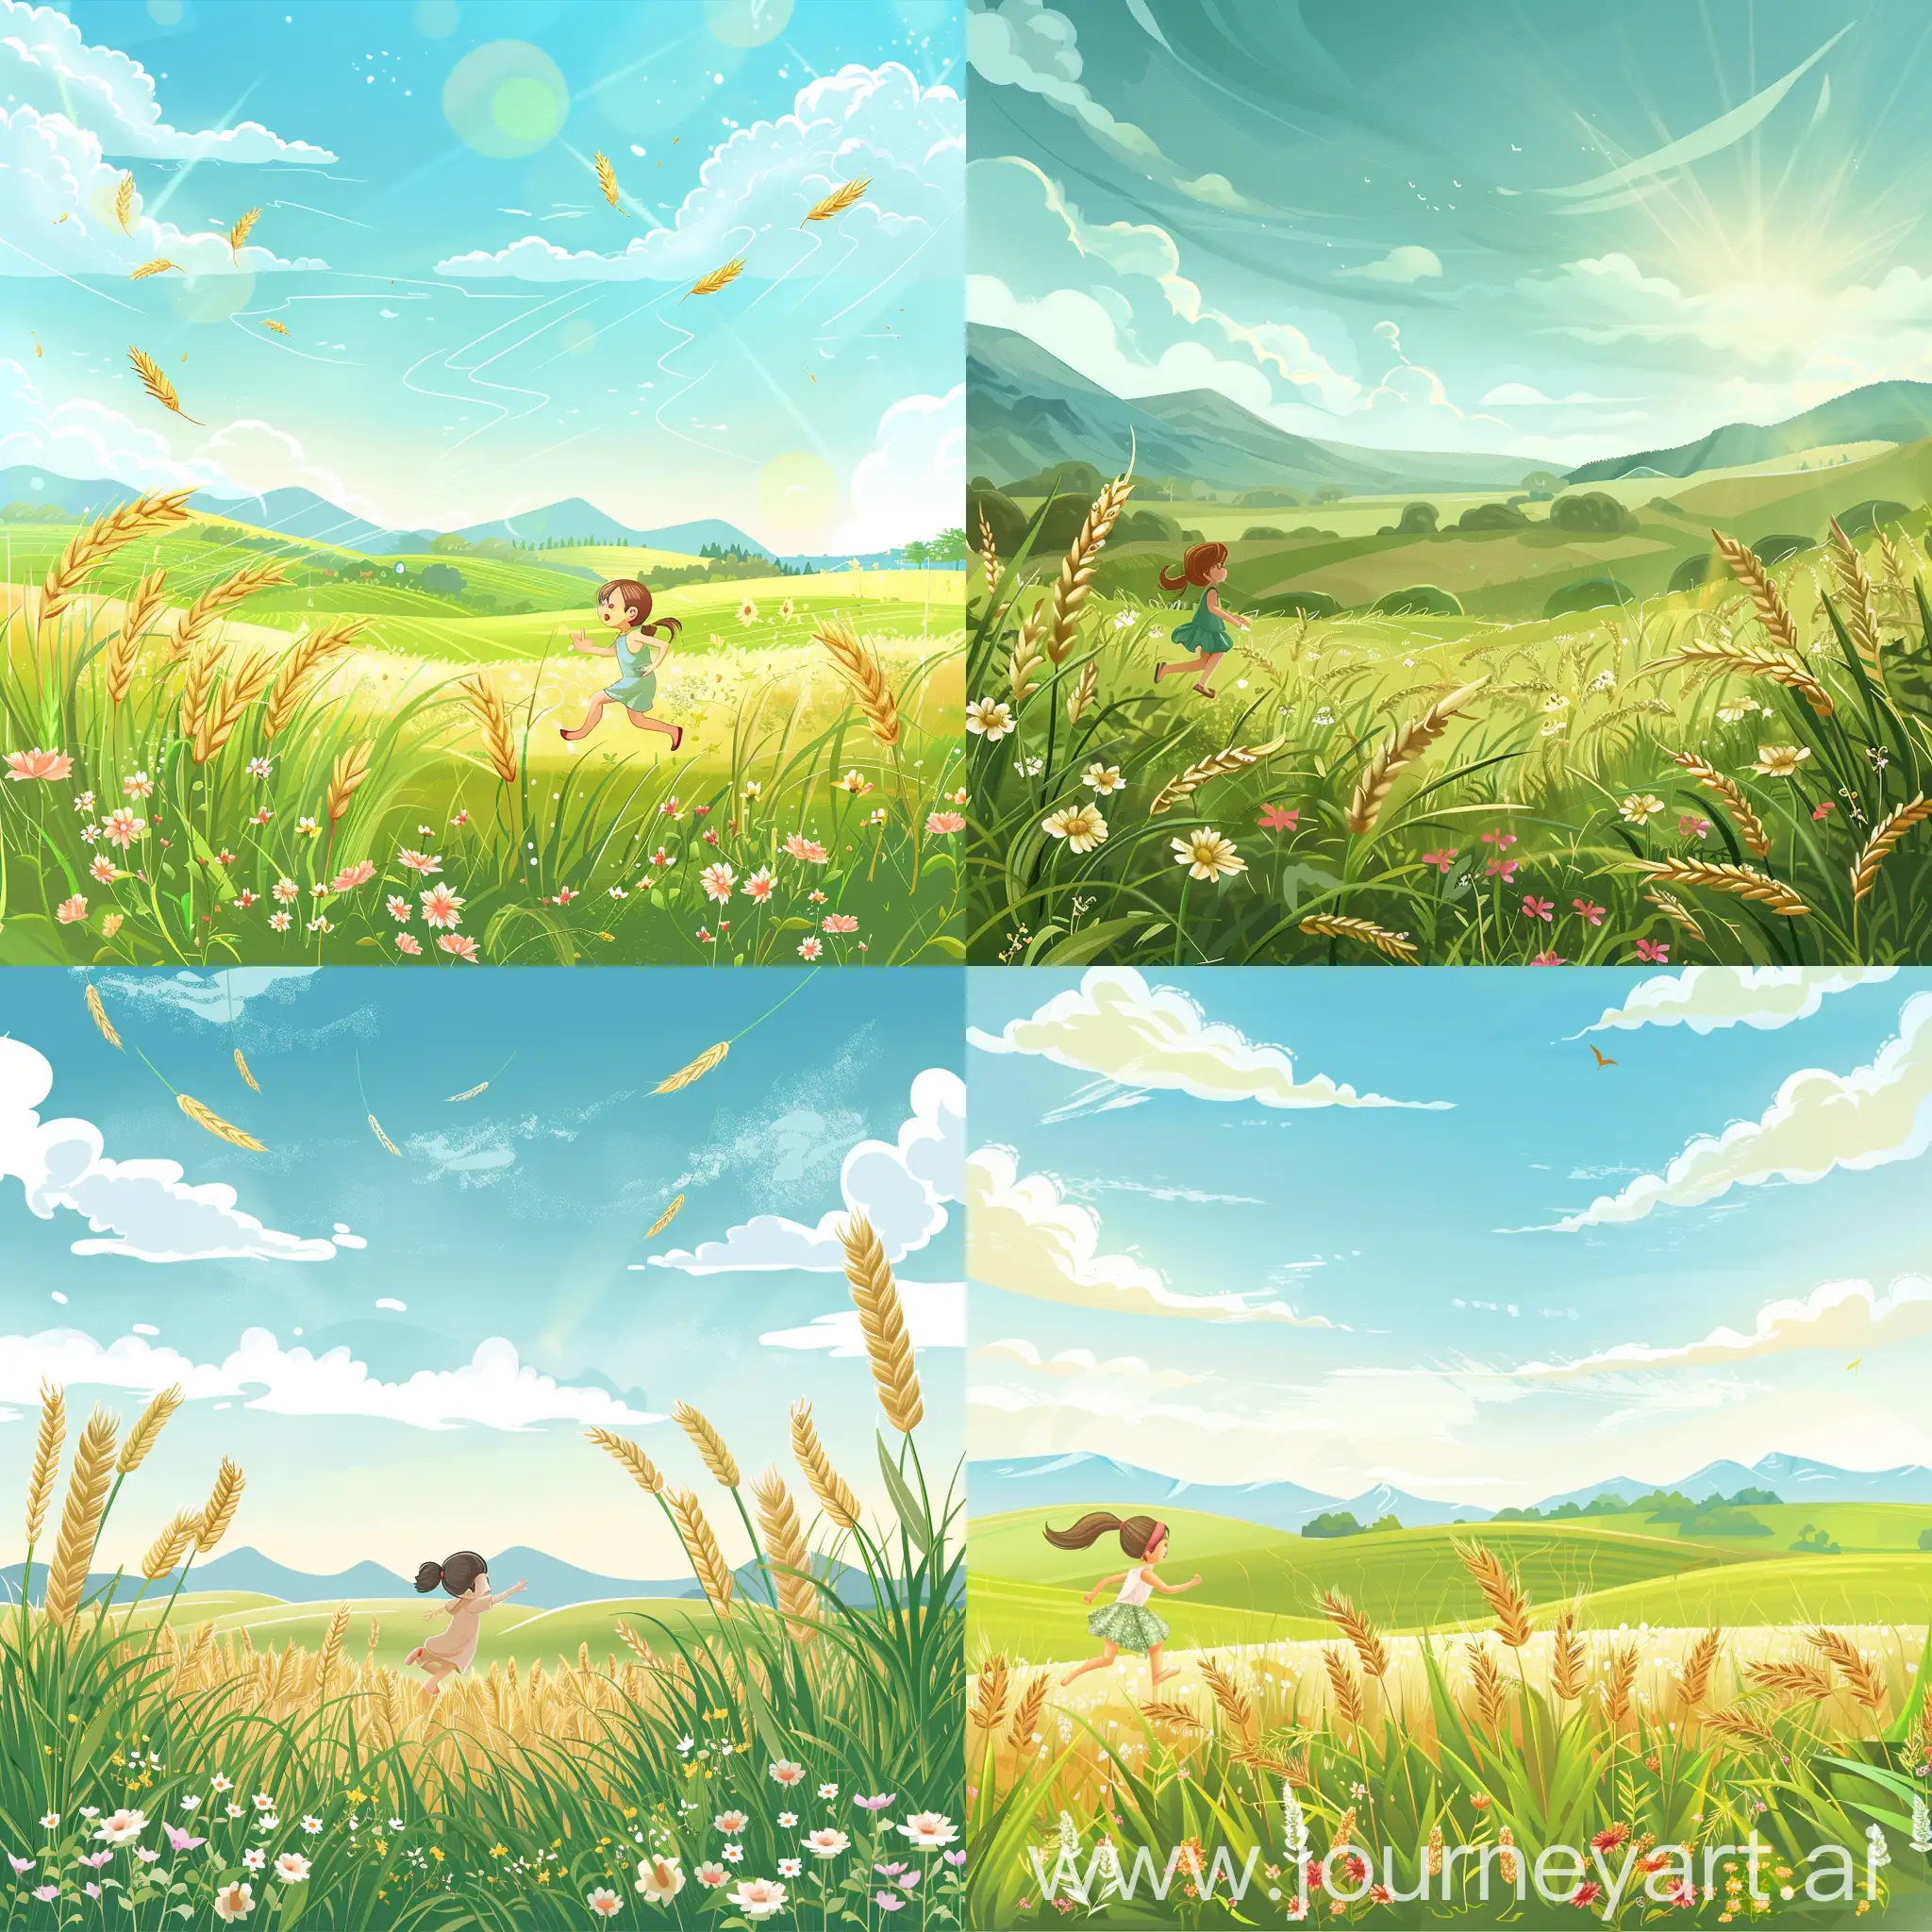 卡通风格的  明媚的天空 绿色的  宽阔的麦田   饱满的麦穗   远山那边 满山的花草  还有悠闲的 看不太清楚的 奔跑的小女孩